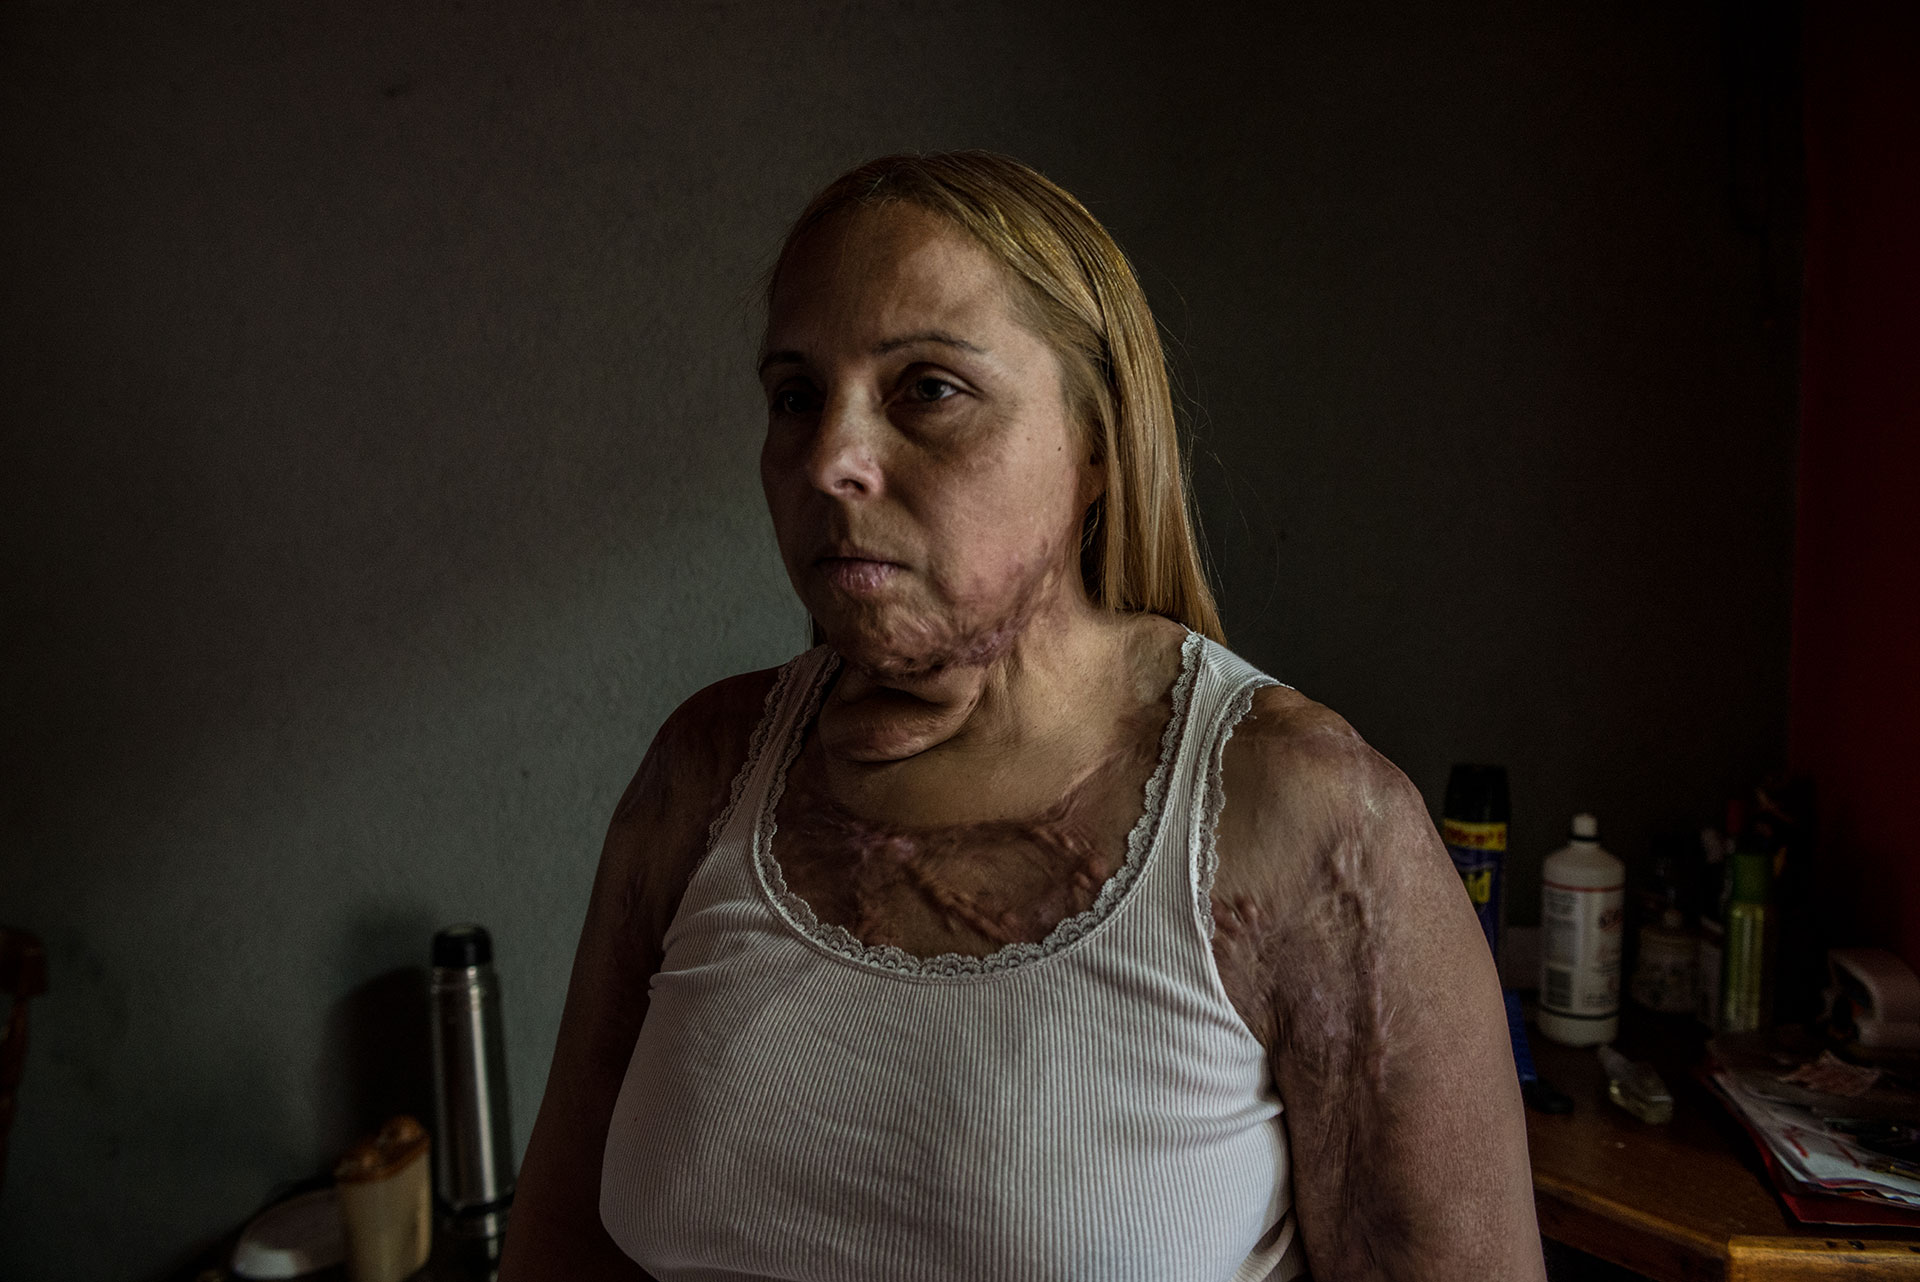 Karina Abregu fue quemada por su esposo, que es alcohólico, después de 11 años de violencia. Actualmente no puede trabajar debido a sus condiciones de salud y no recibe ningún tipo de ayuda del gobierno. Ella está luchando por sus derechos apoyada por su hermana Carolina.